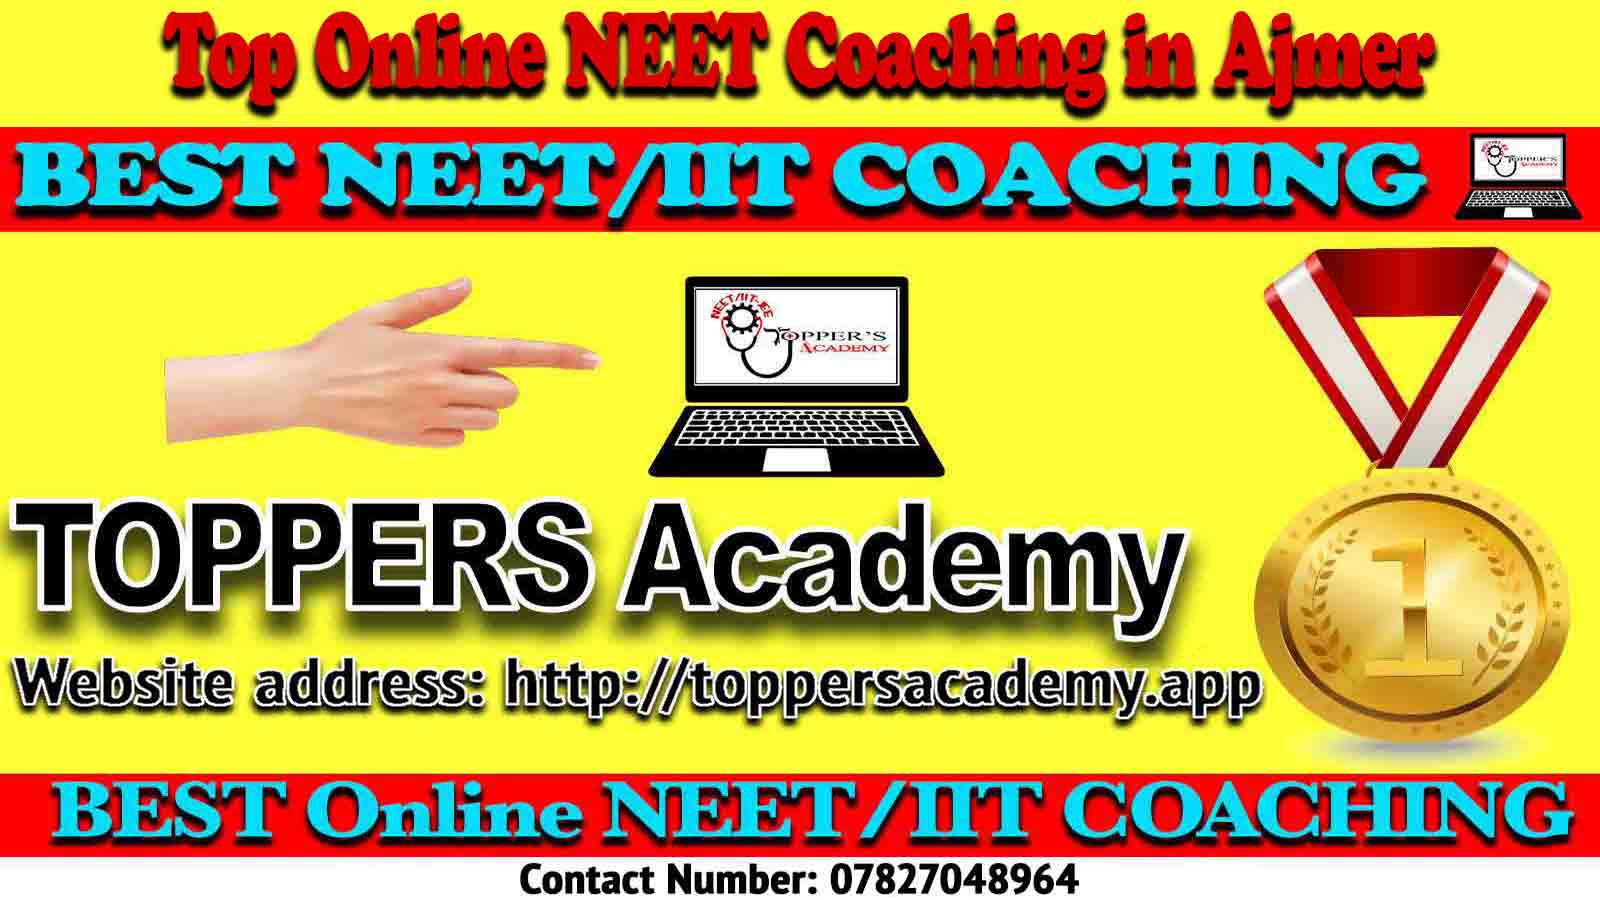 Best Online NEET Coaching in Ajmer